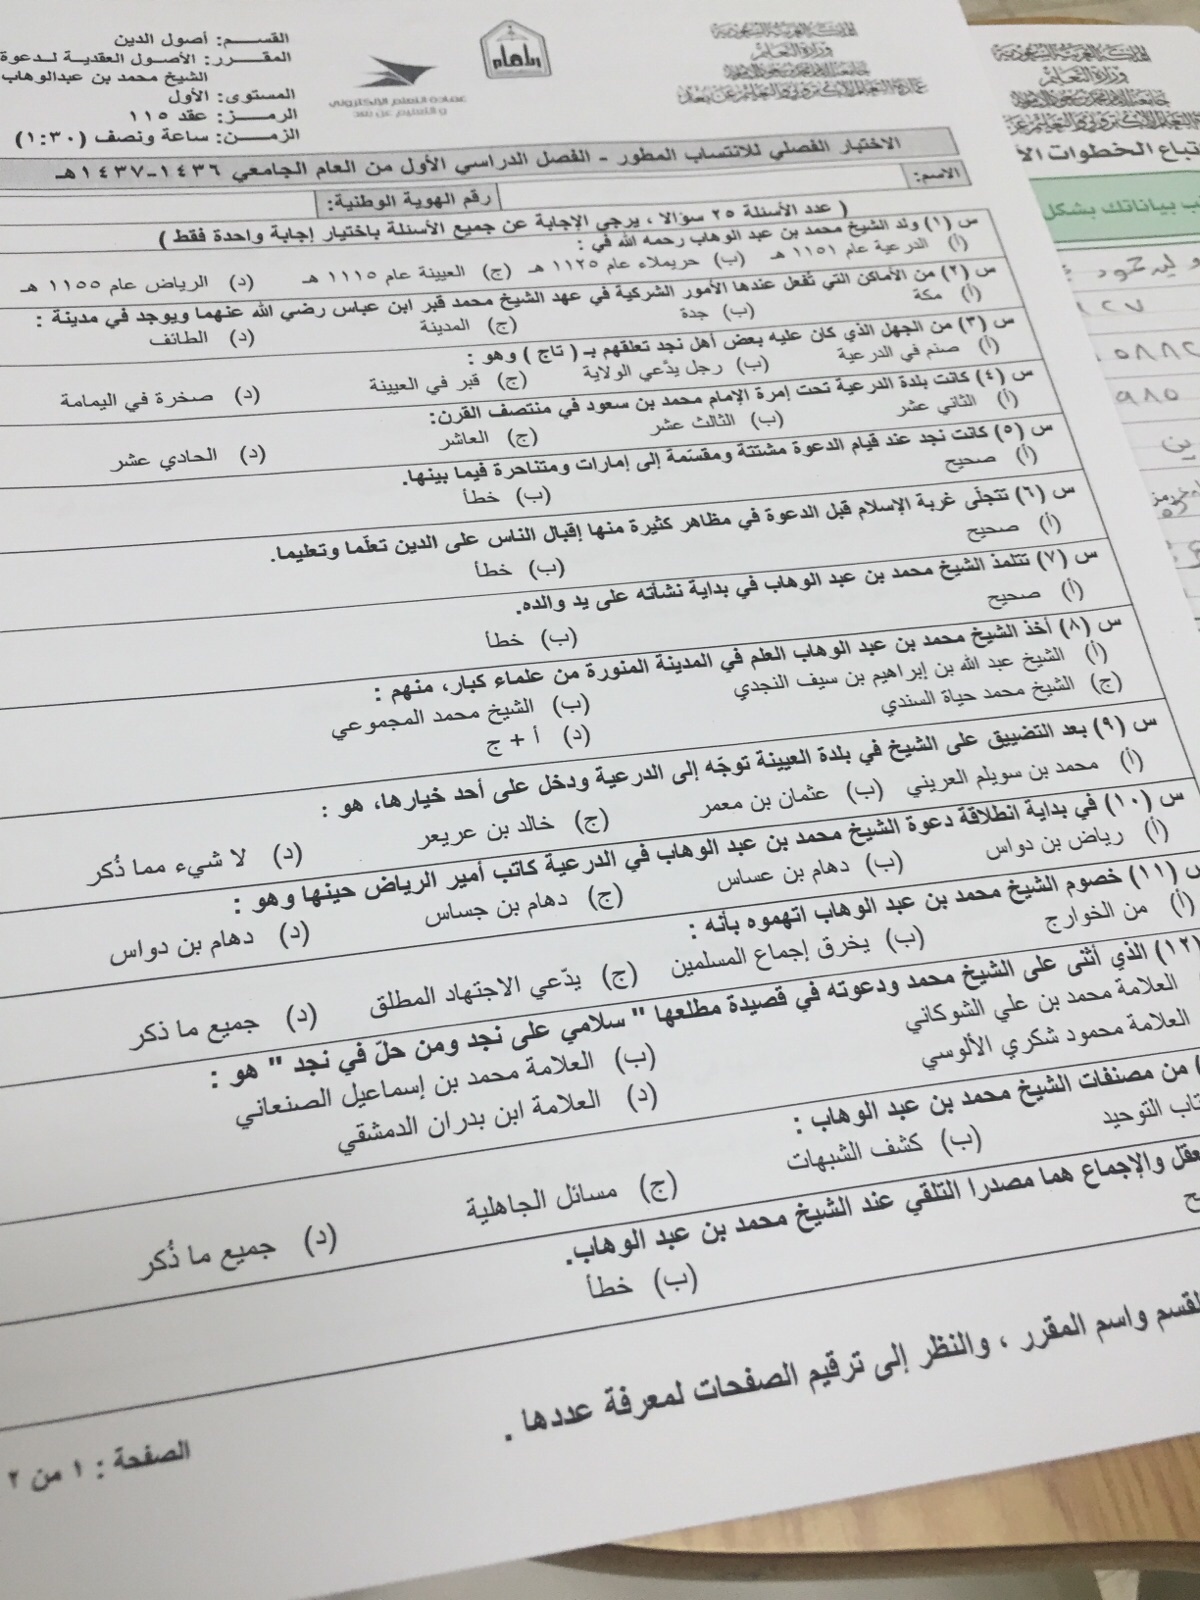 اسئلة اختبار دعوة الشيخ محمد بن عبدالوهاب عقد 115 الفصل الأول 1437هـ المستوى الأول